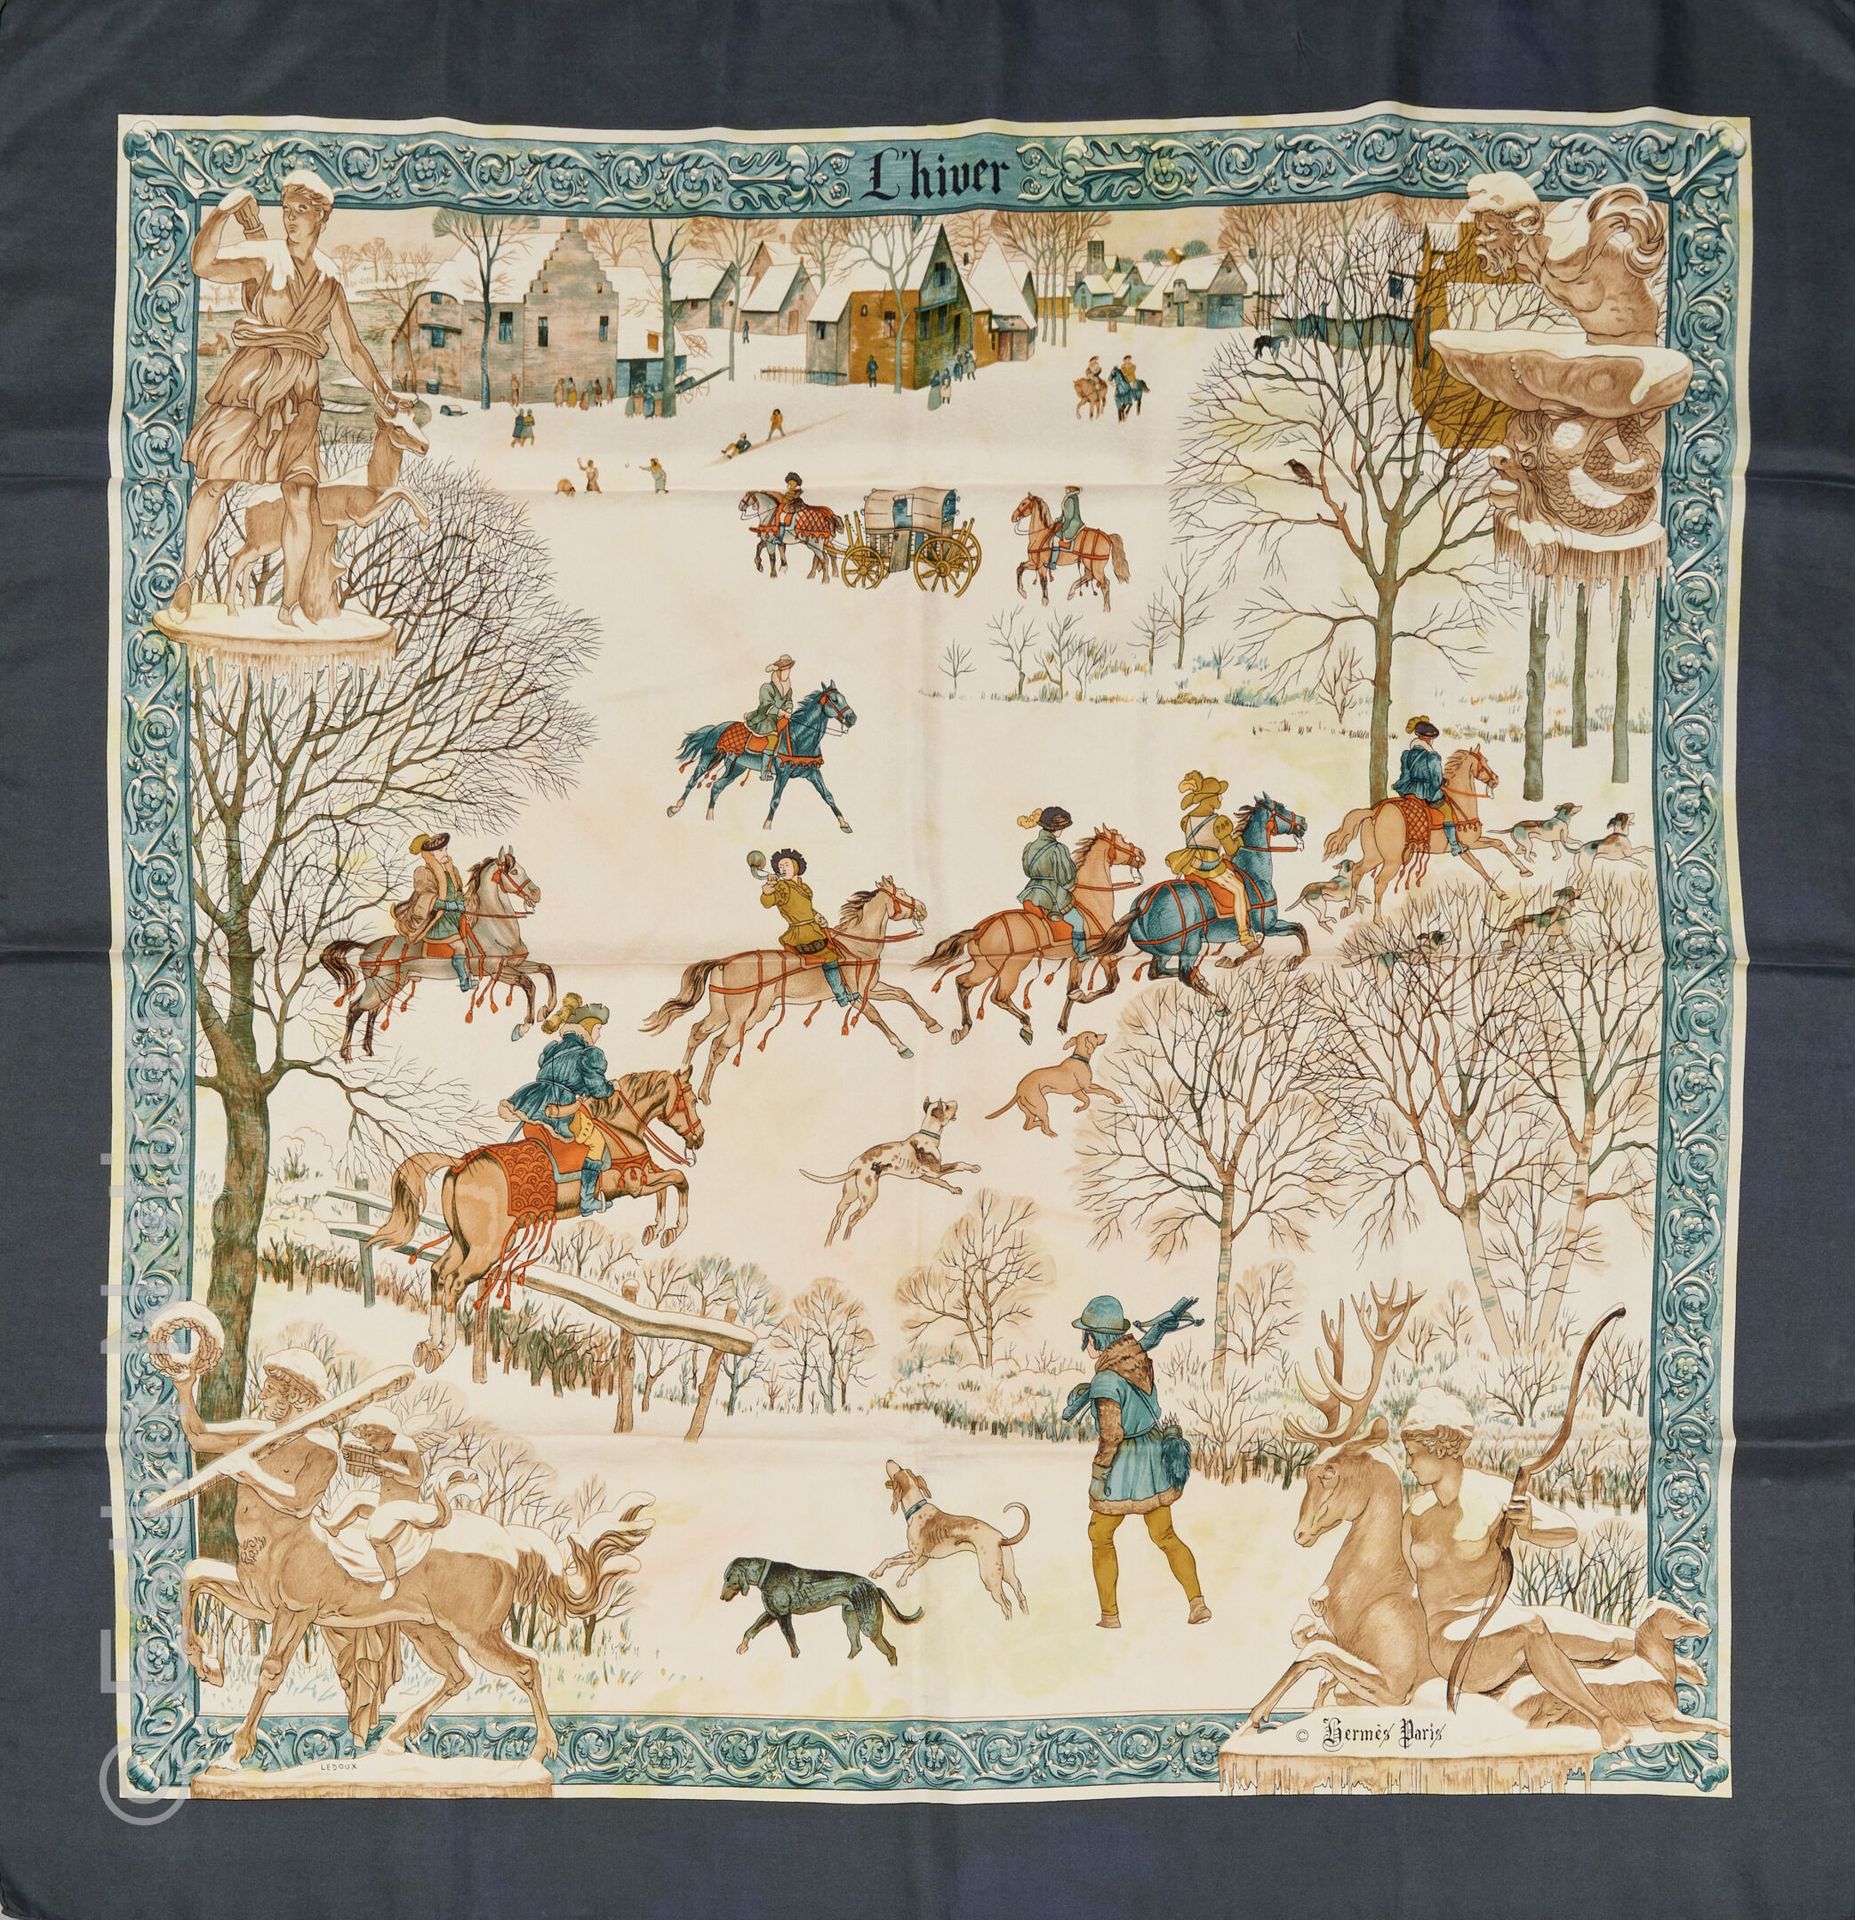 HERMES 题为 "冬季 "的丝质斜纹布印刷品（明显发黄和变色）。